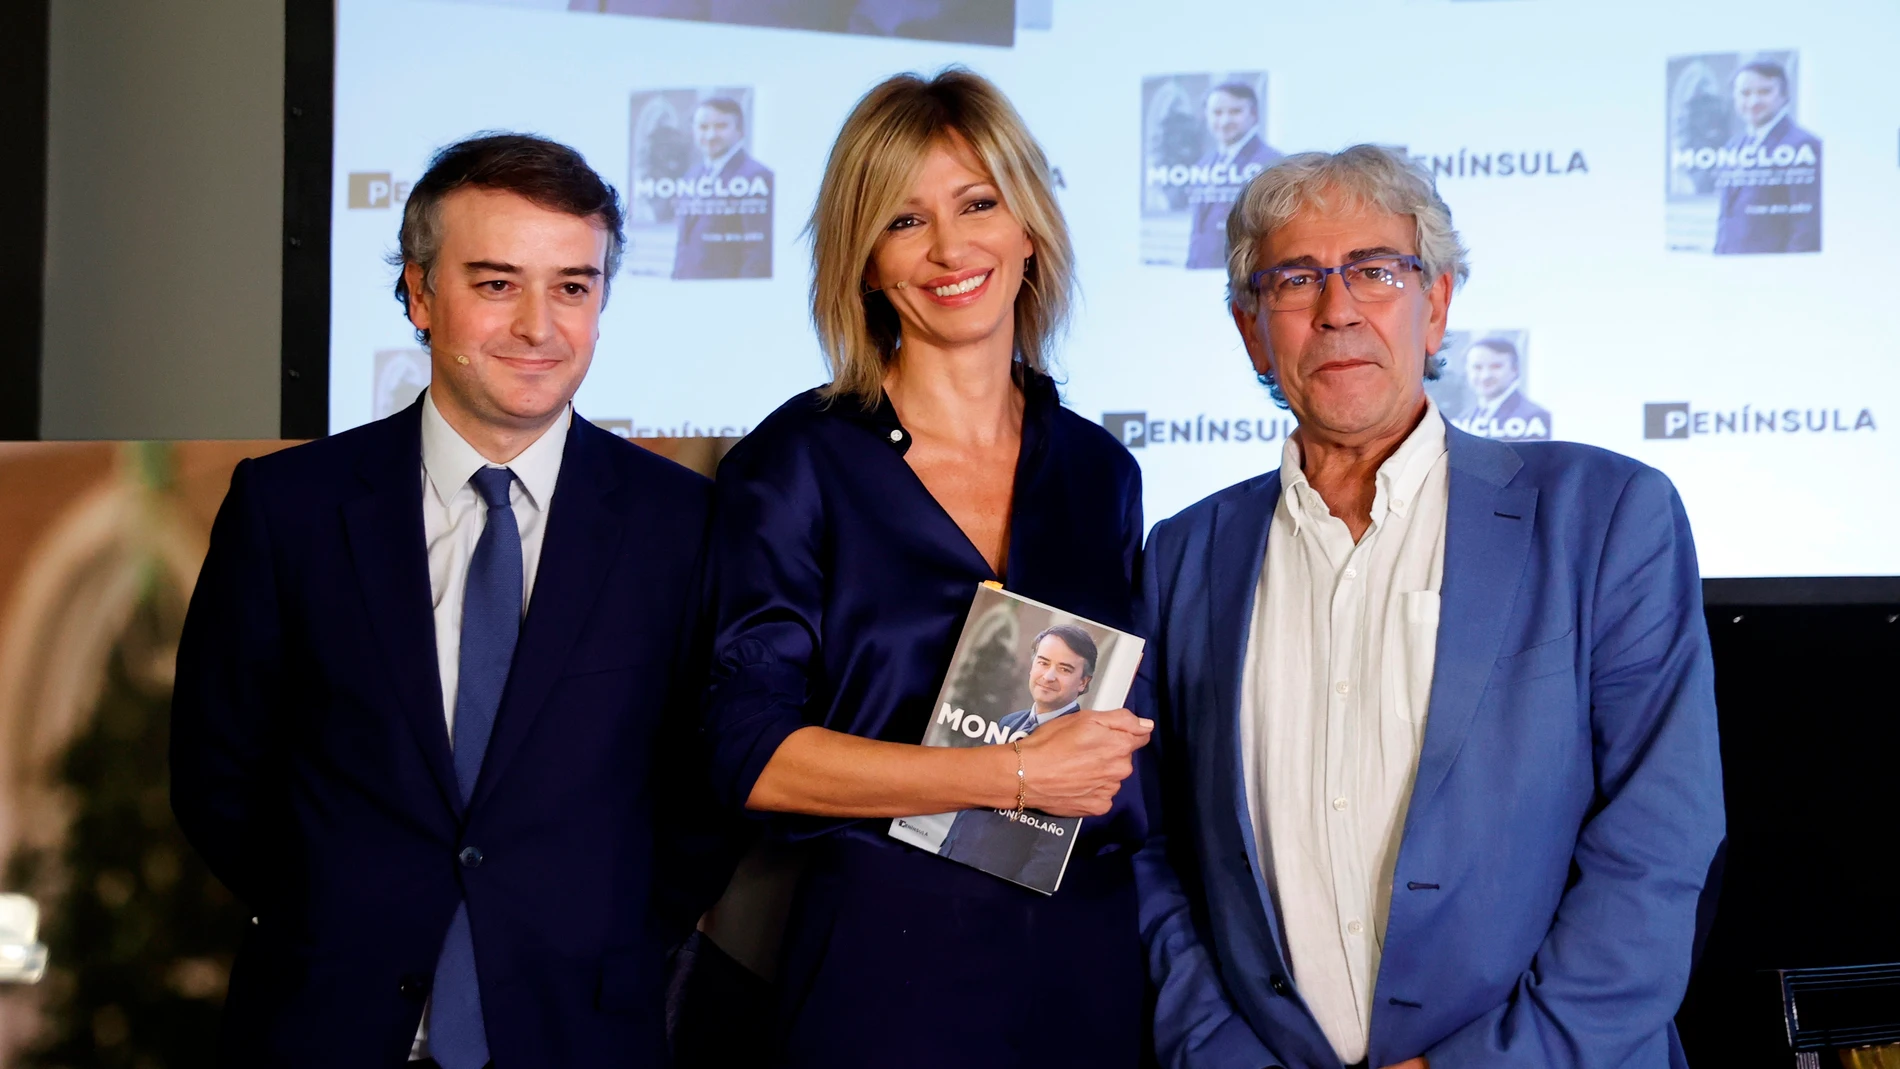 Iván Redondo, Susanna Griso y Toni Bolaño, durante la presentación del libro "Iván Redondo. La política o el arte de lo que no se ve"